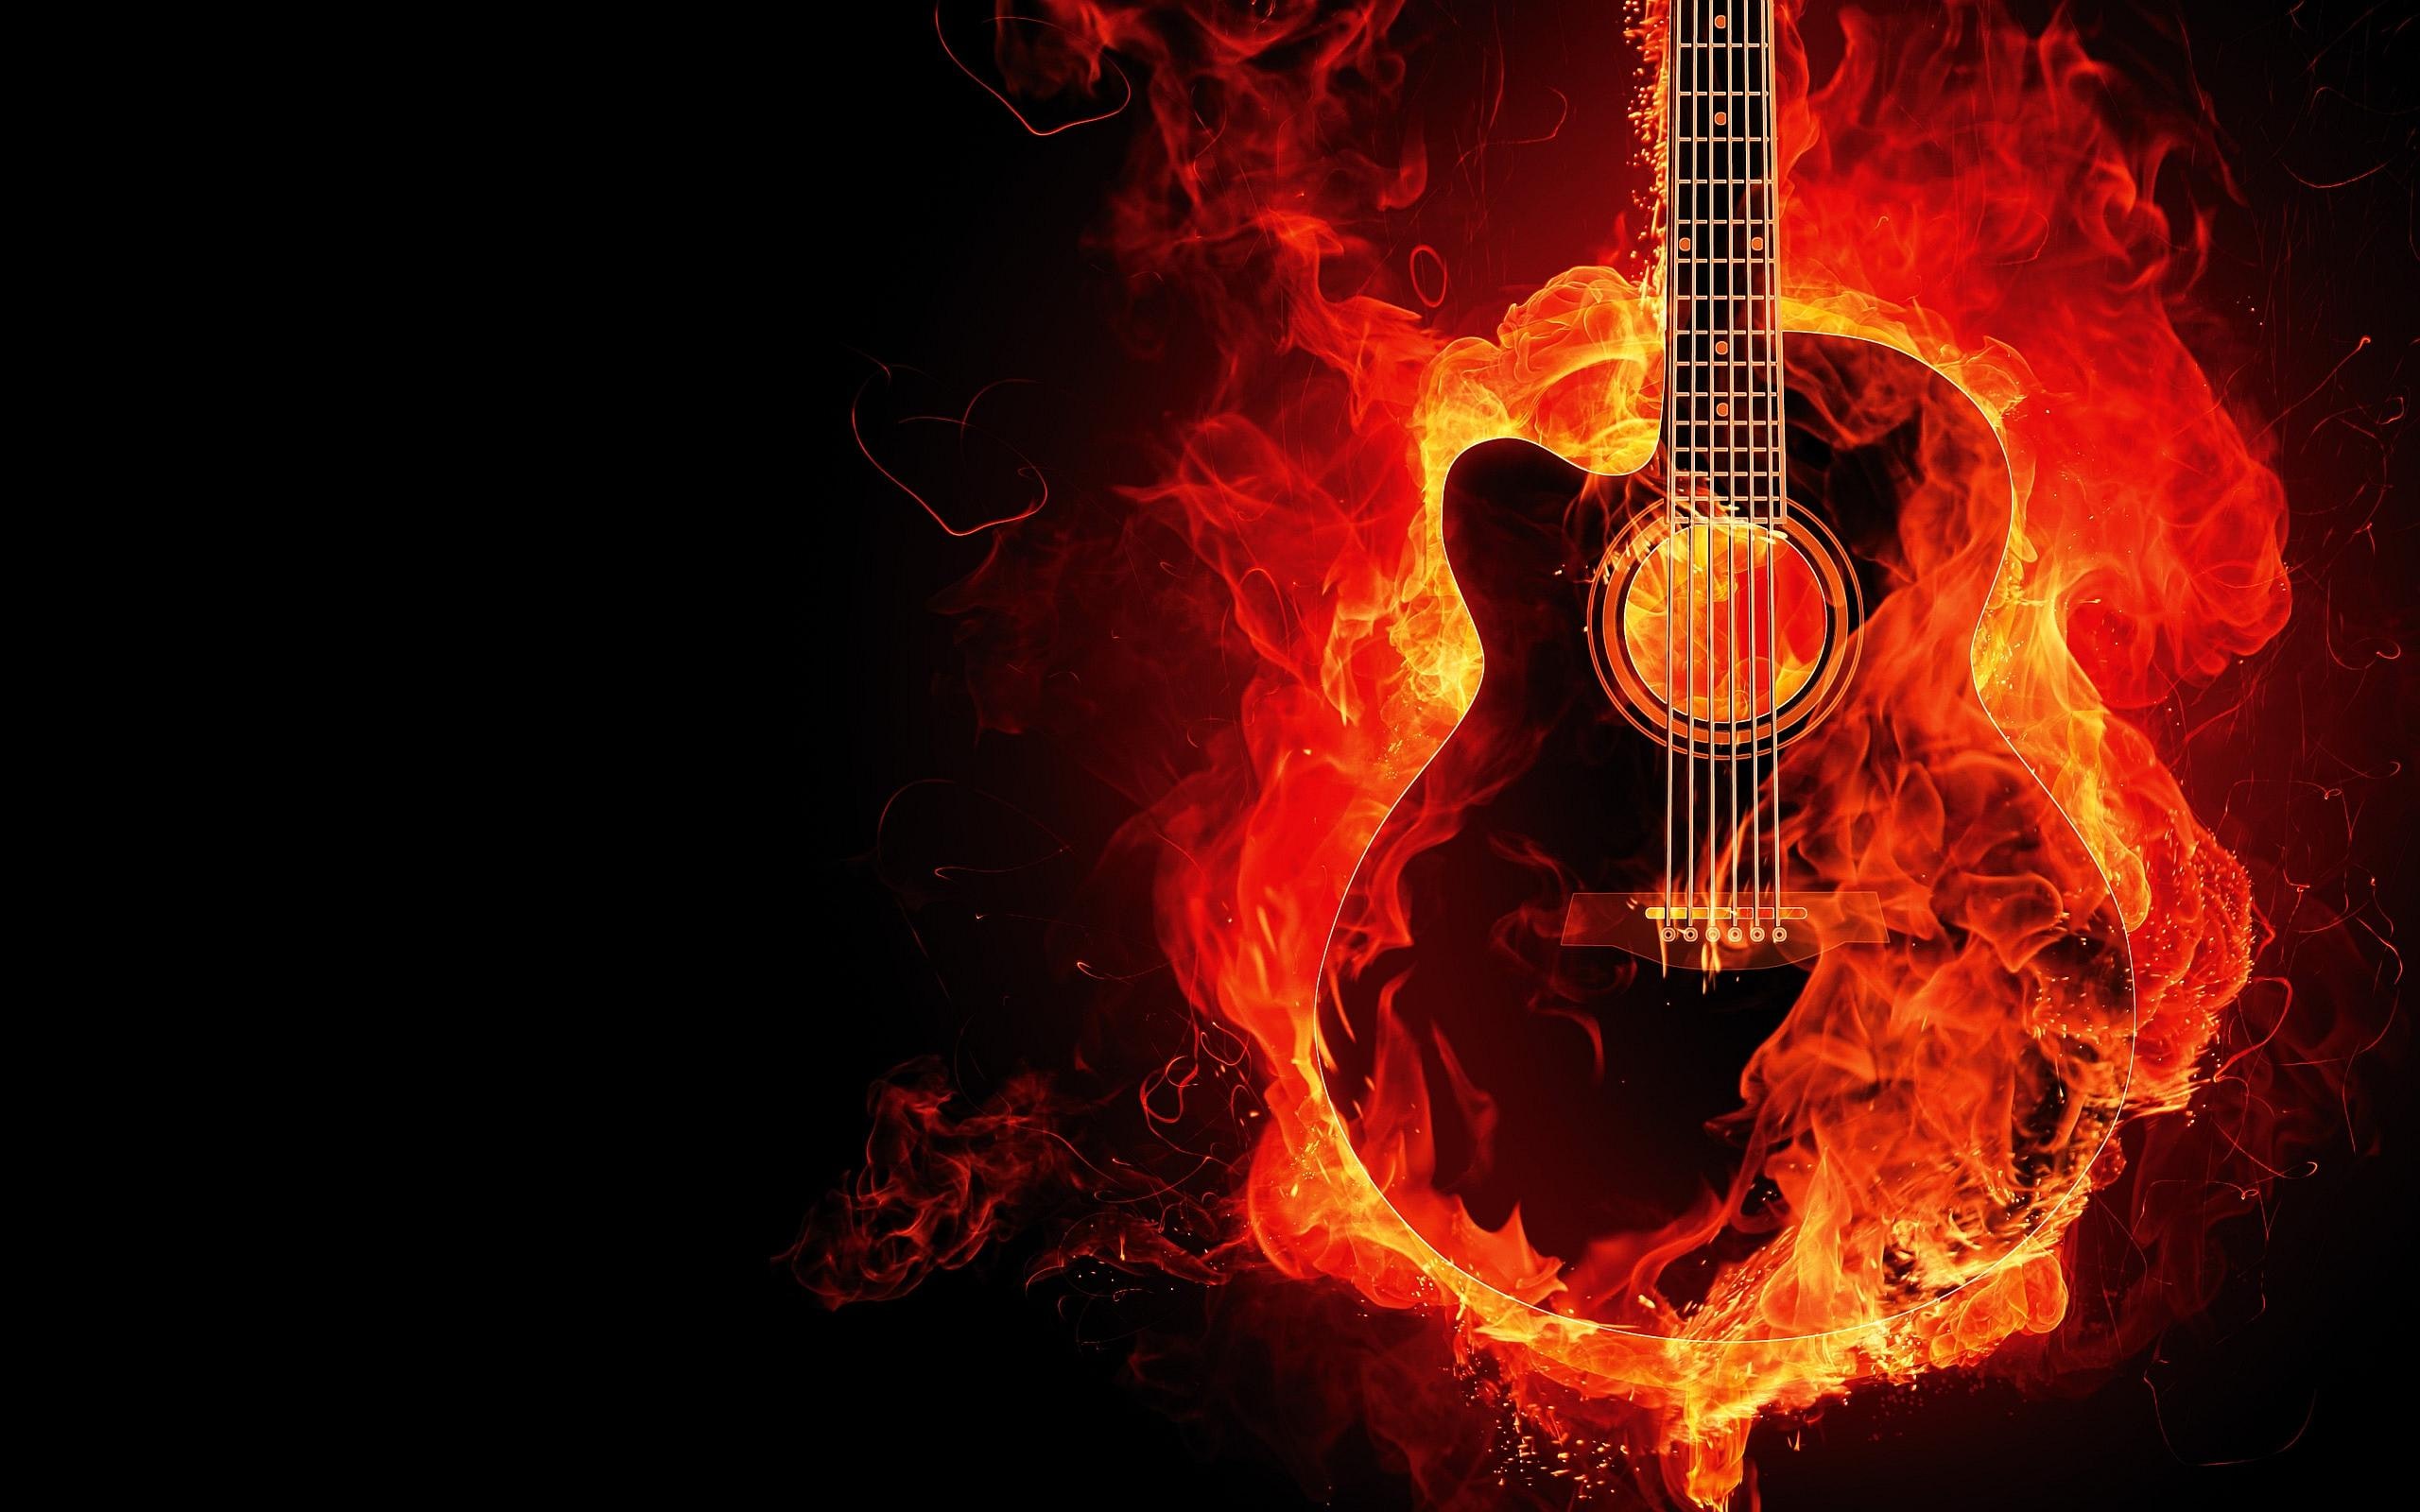 A burning guitar